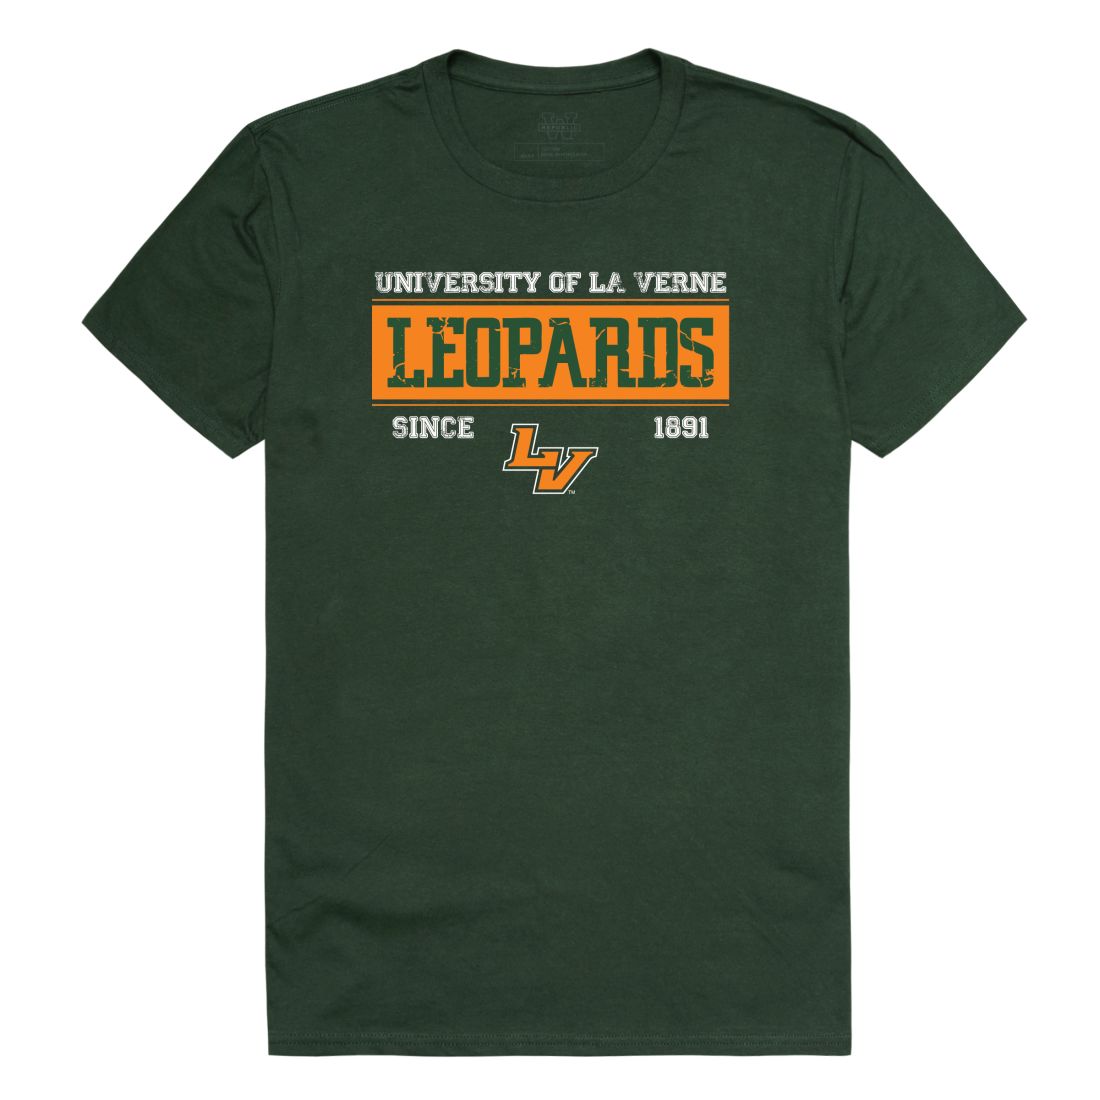 University of La Verne Leopards Established T-Shirt